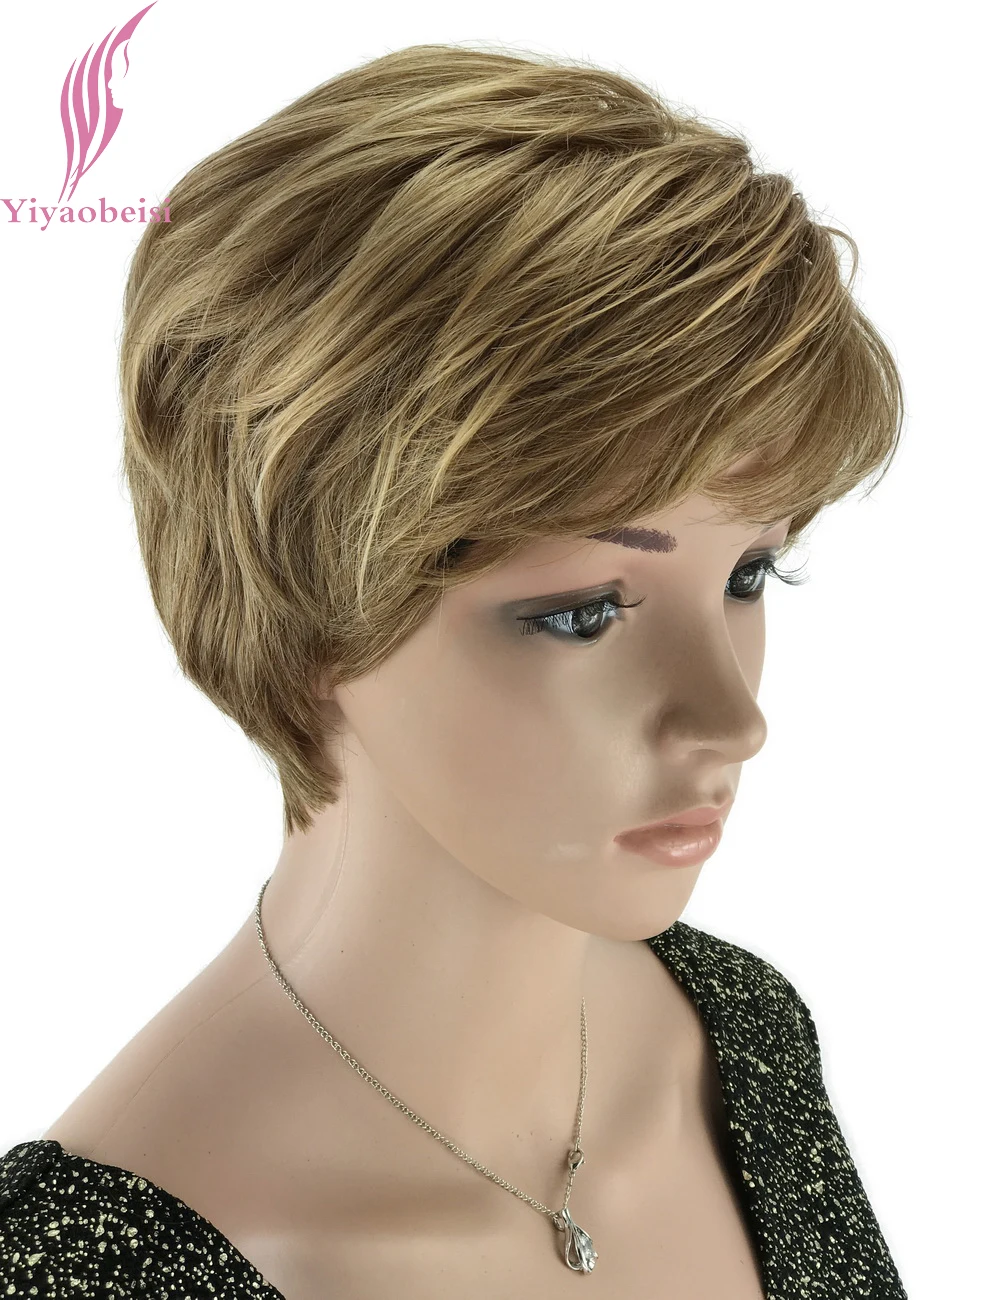 Yiyaobess 6 дюймов Натуральные Выделенные короткие светлые парики синтетические афро волосы прямые парики для черных женщин